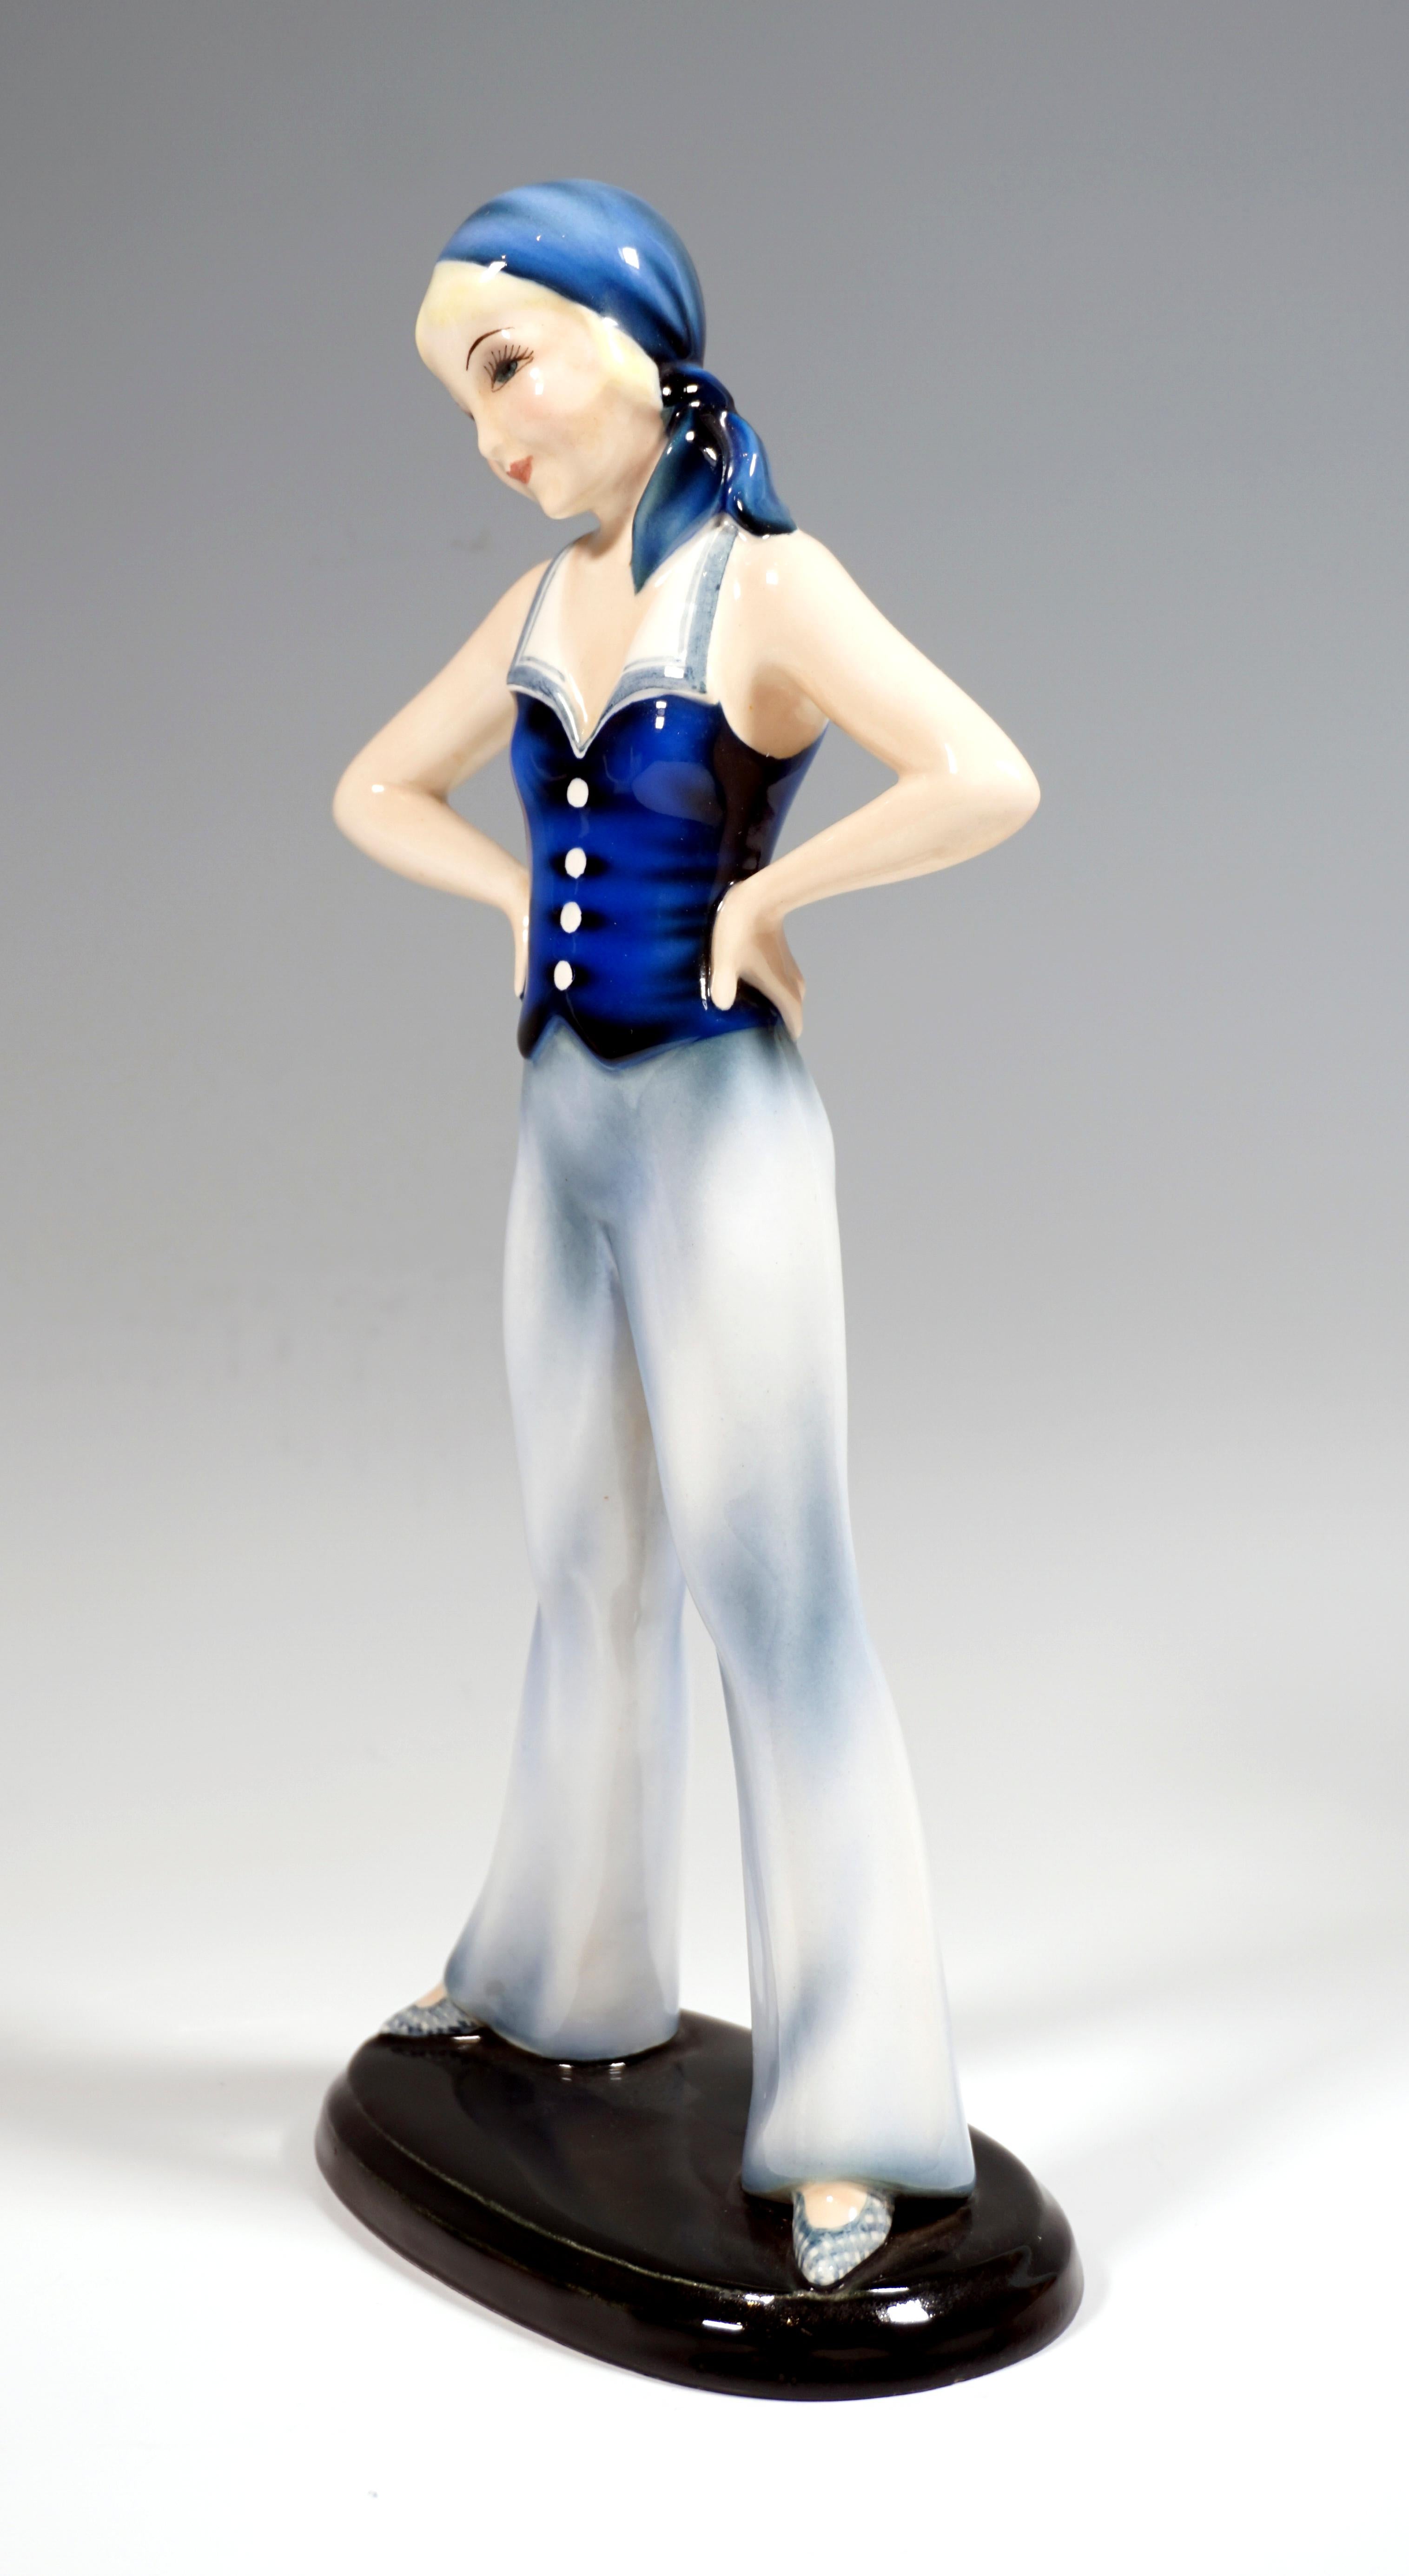 Très rare figurine en céramique Art Déco de Goldscheider.
Jeune fille aux cheveux blonds attachés et au foulard bleu noué dans le dos, vêtue d'une blouse bleue sans manches à col marin et d'un large pantalon à cloche bleu clair, debout, les jambes